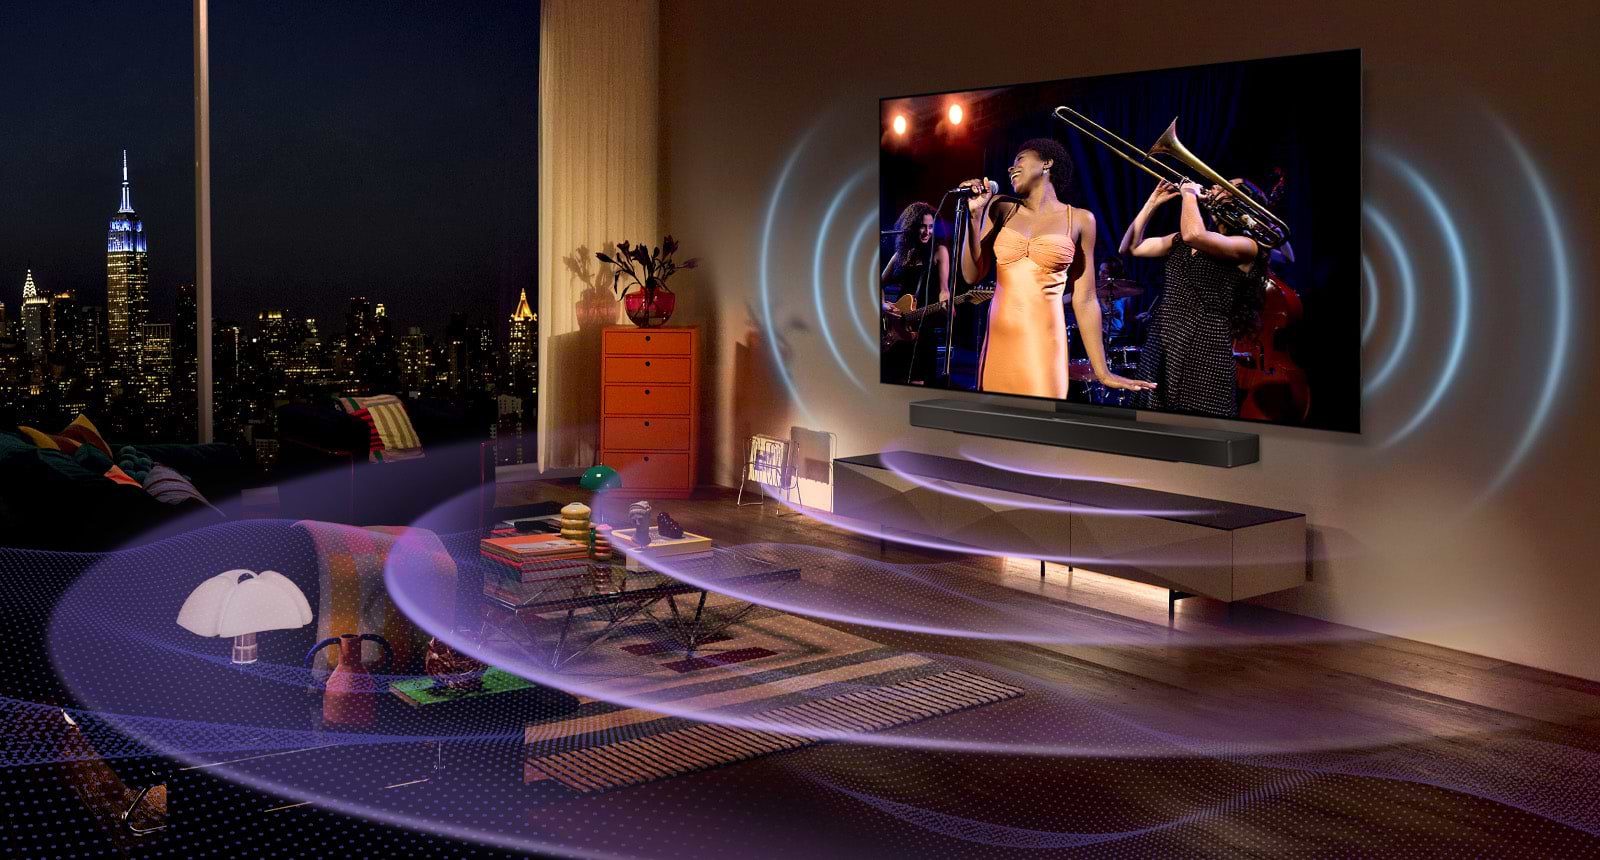 טלוויזיה חכמה  בטכנולוגייתevo  LG OLED - בגודל 77 אינץ' Smart TV  ברזולוציית K4 דגם: OLED77C36LA